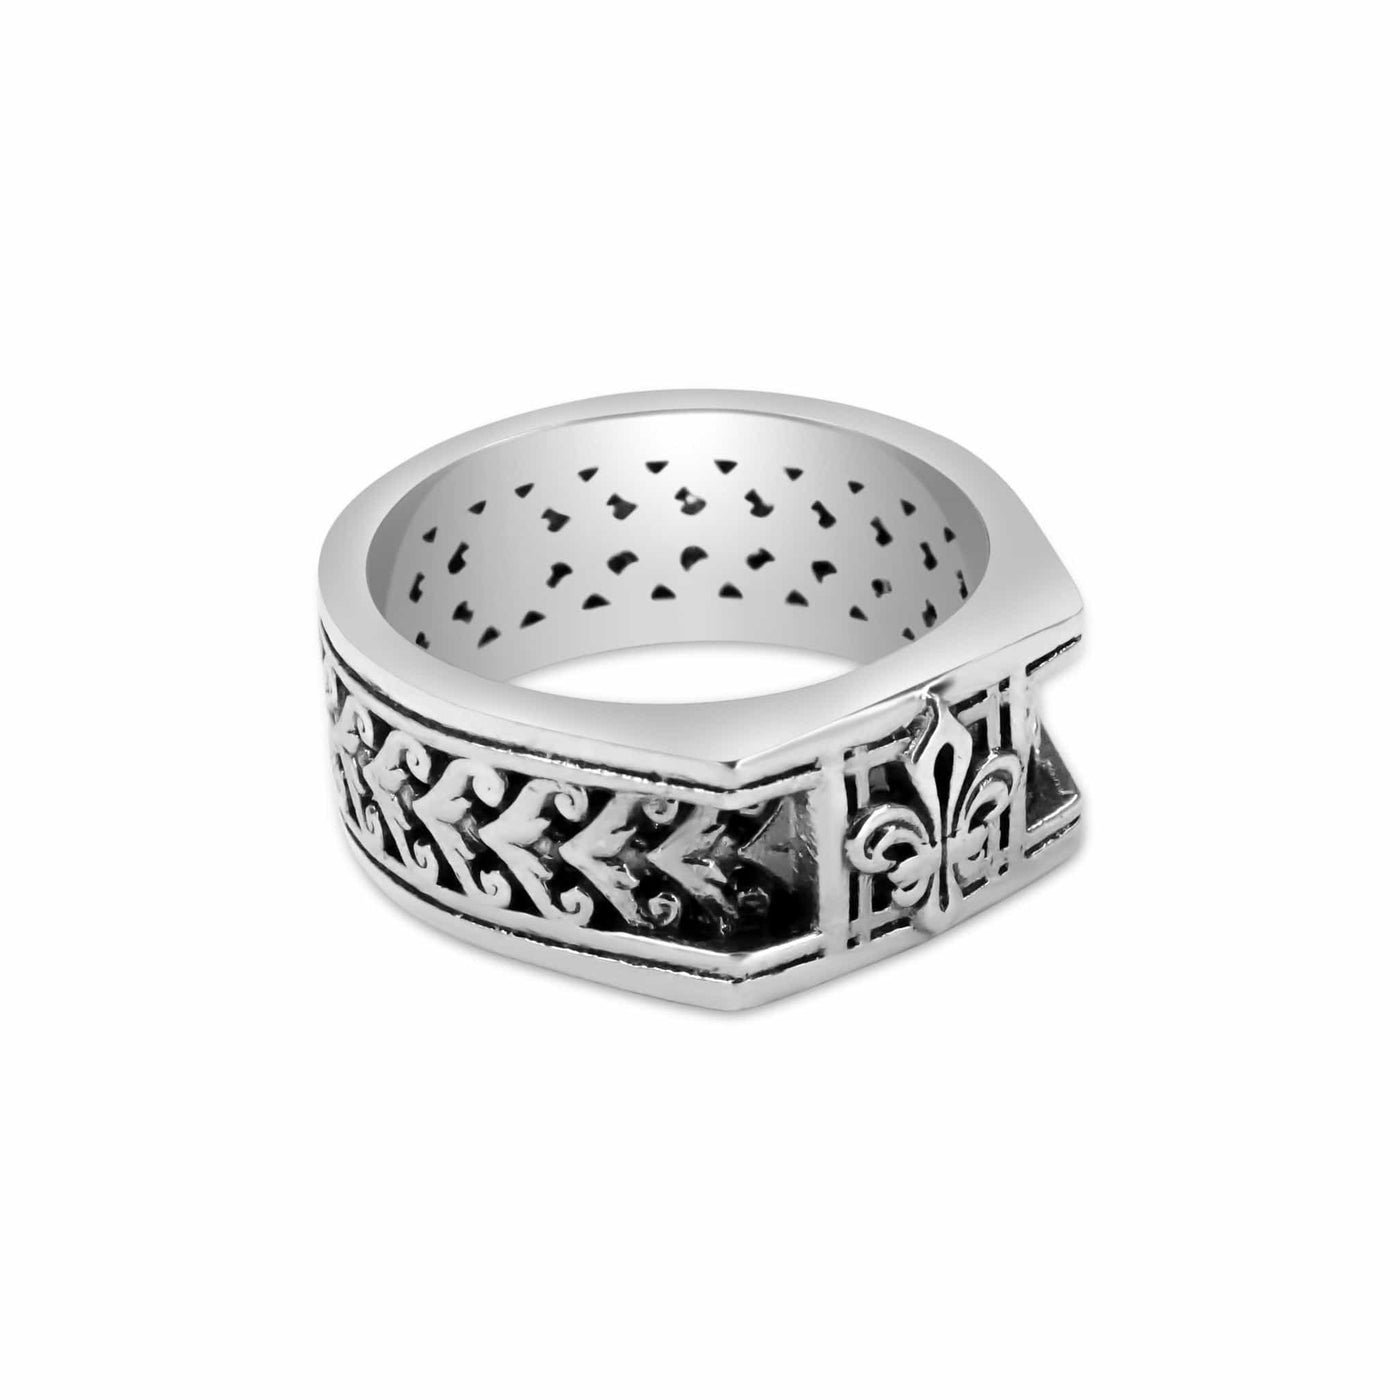 Apice - Girati Silver Rings for Men